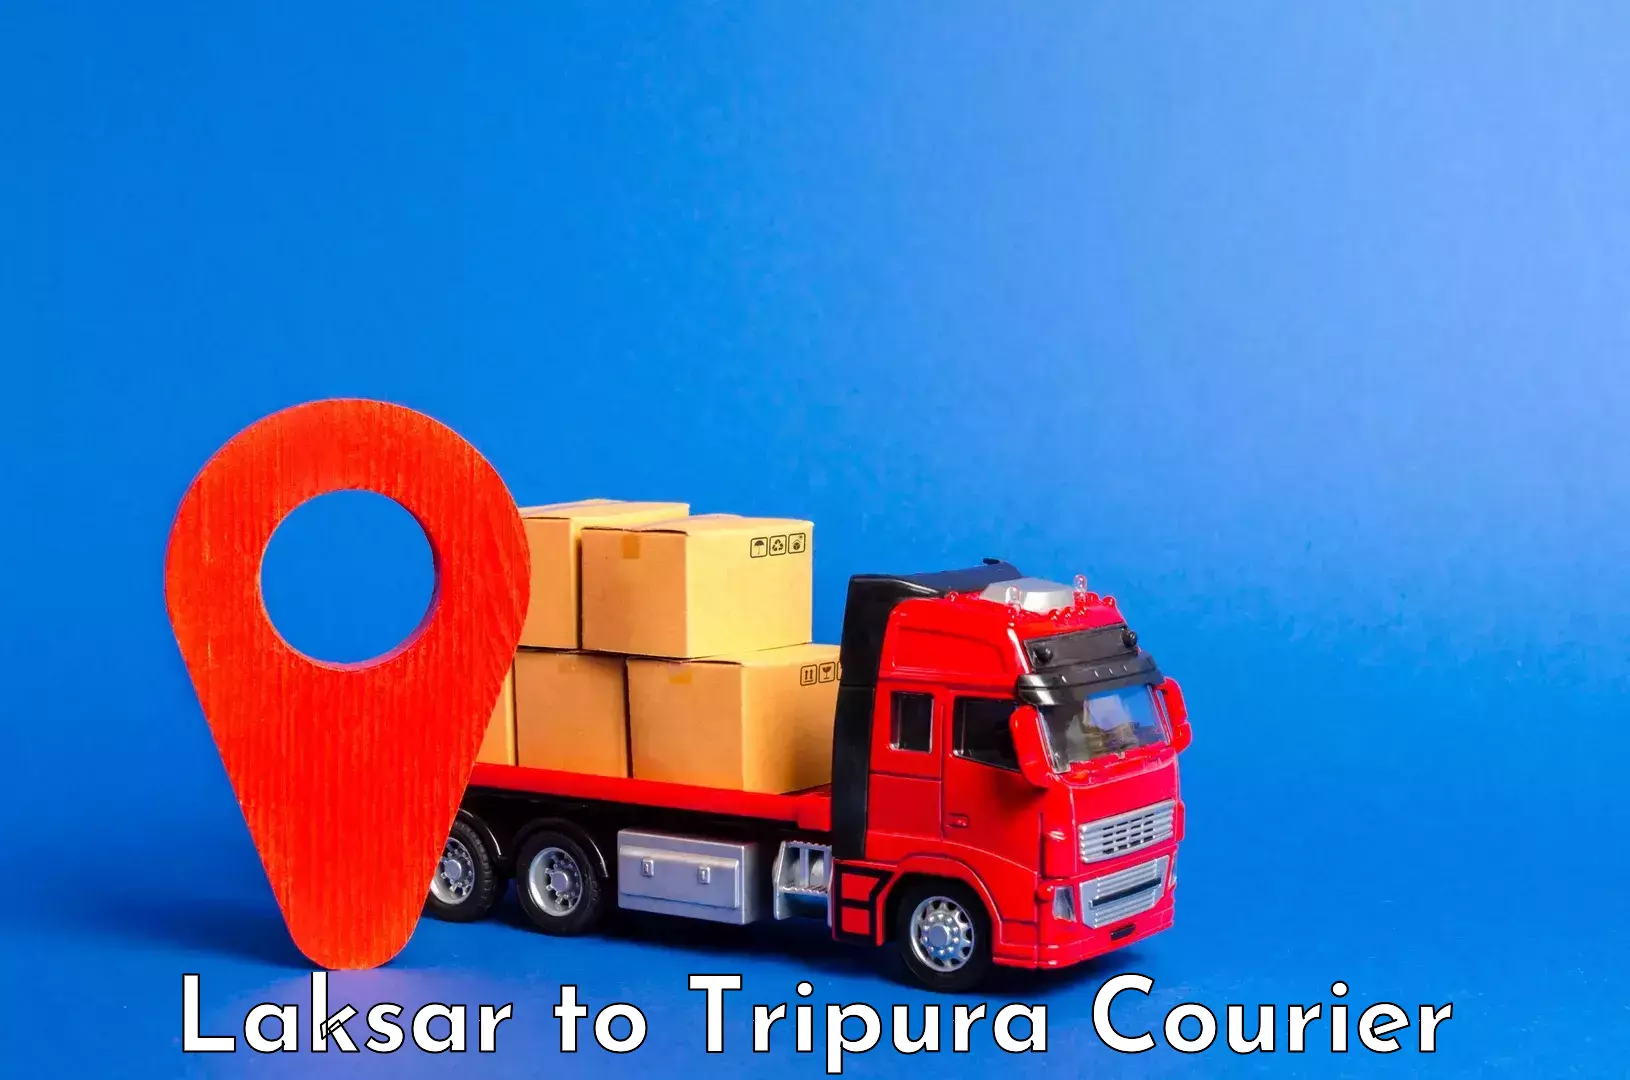 Baggage transport technology Laksar to Tripura